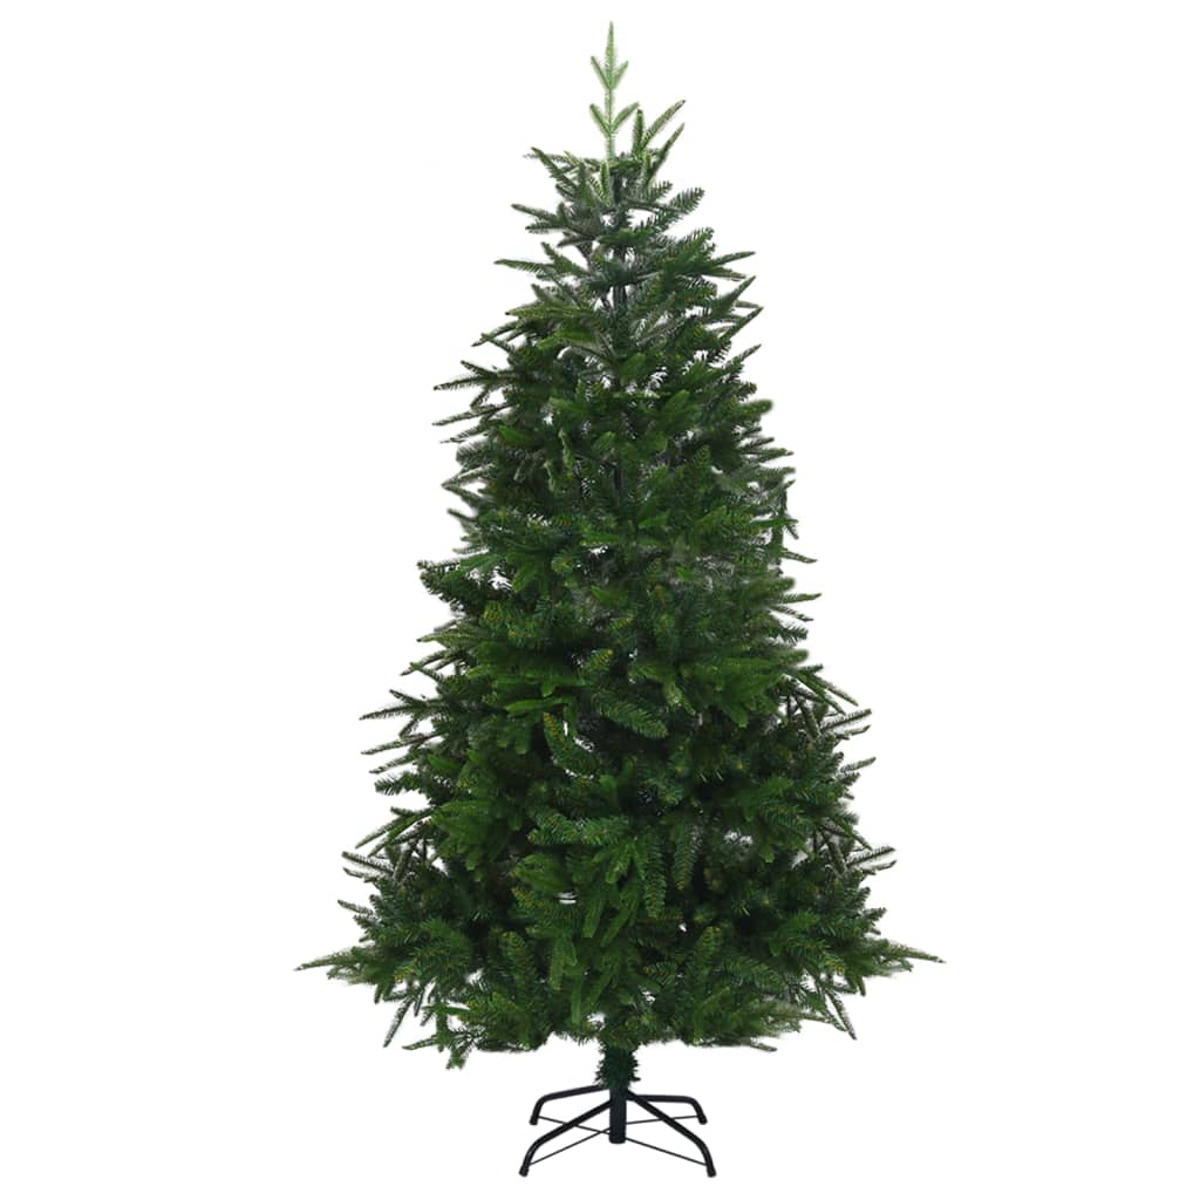 VIDAXL 3077877 Weihnachtsbaum